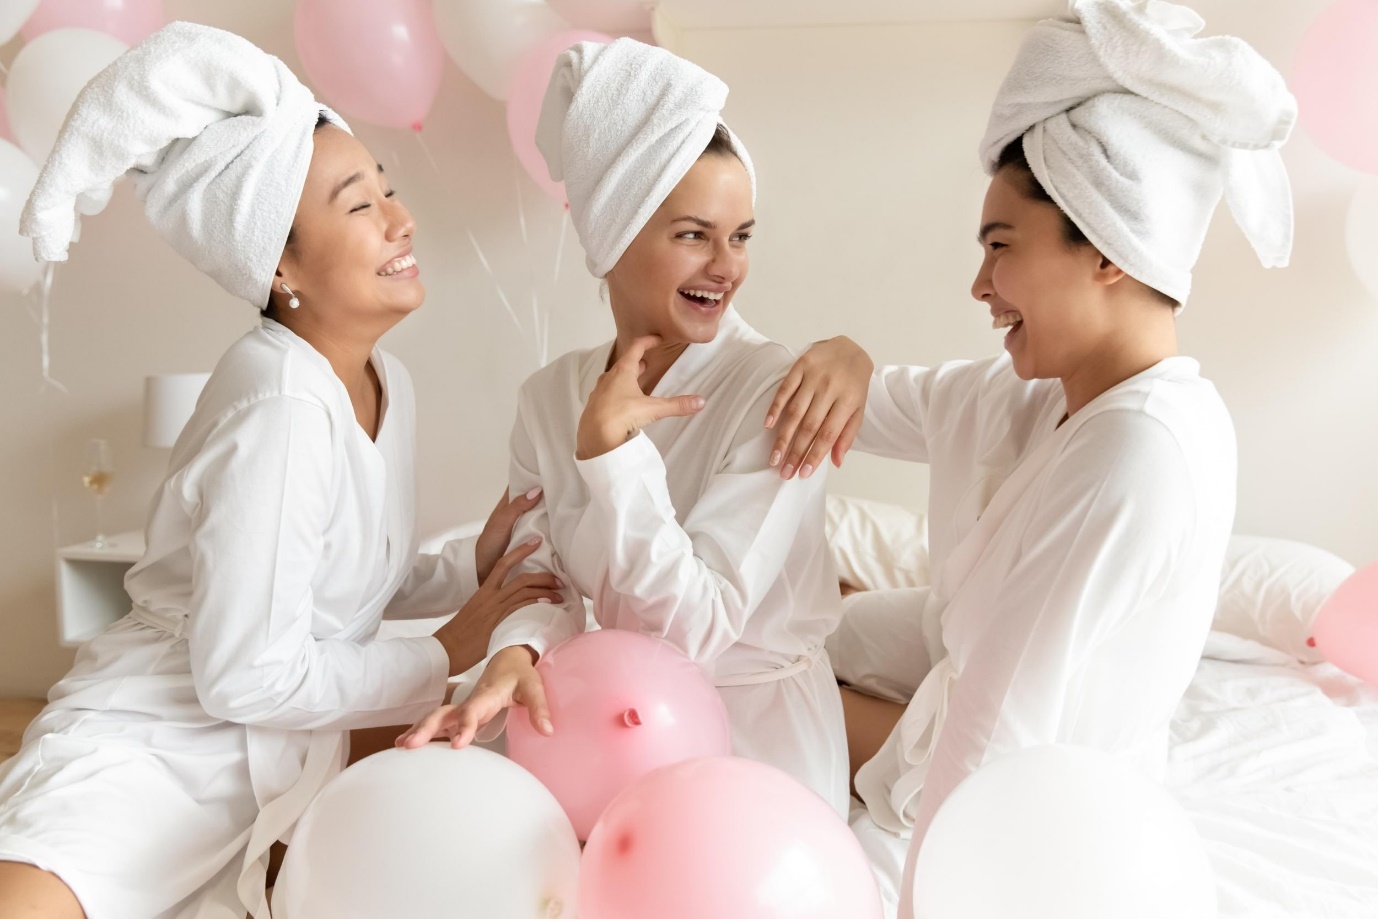 women celebrating bachelorette party at a spa | Wedifys